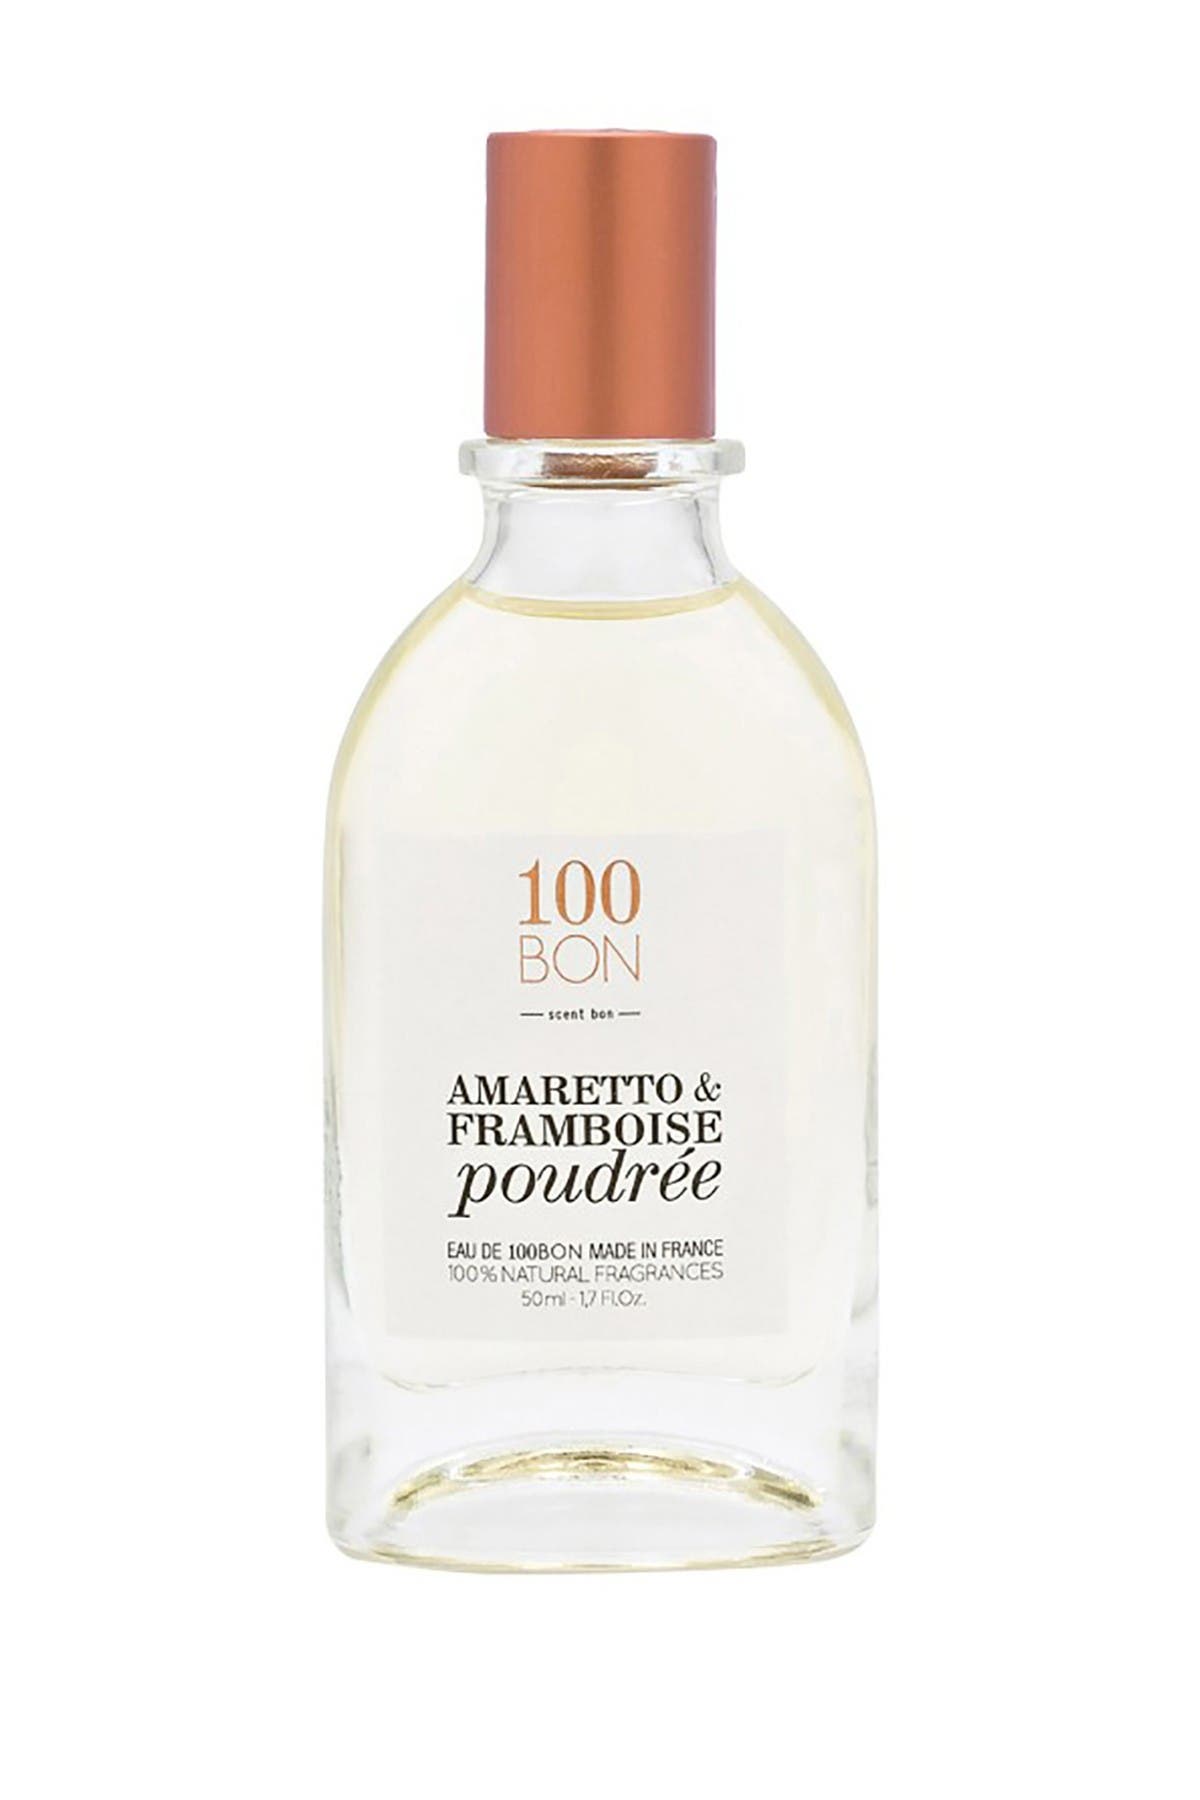 Amaretto & Framboise Poudree 100% Natural Fragrance Spray - 1.7oz. 100BON